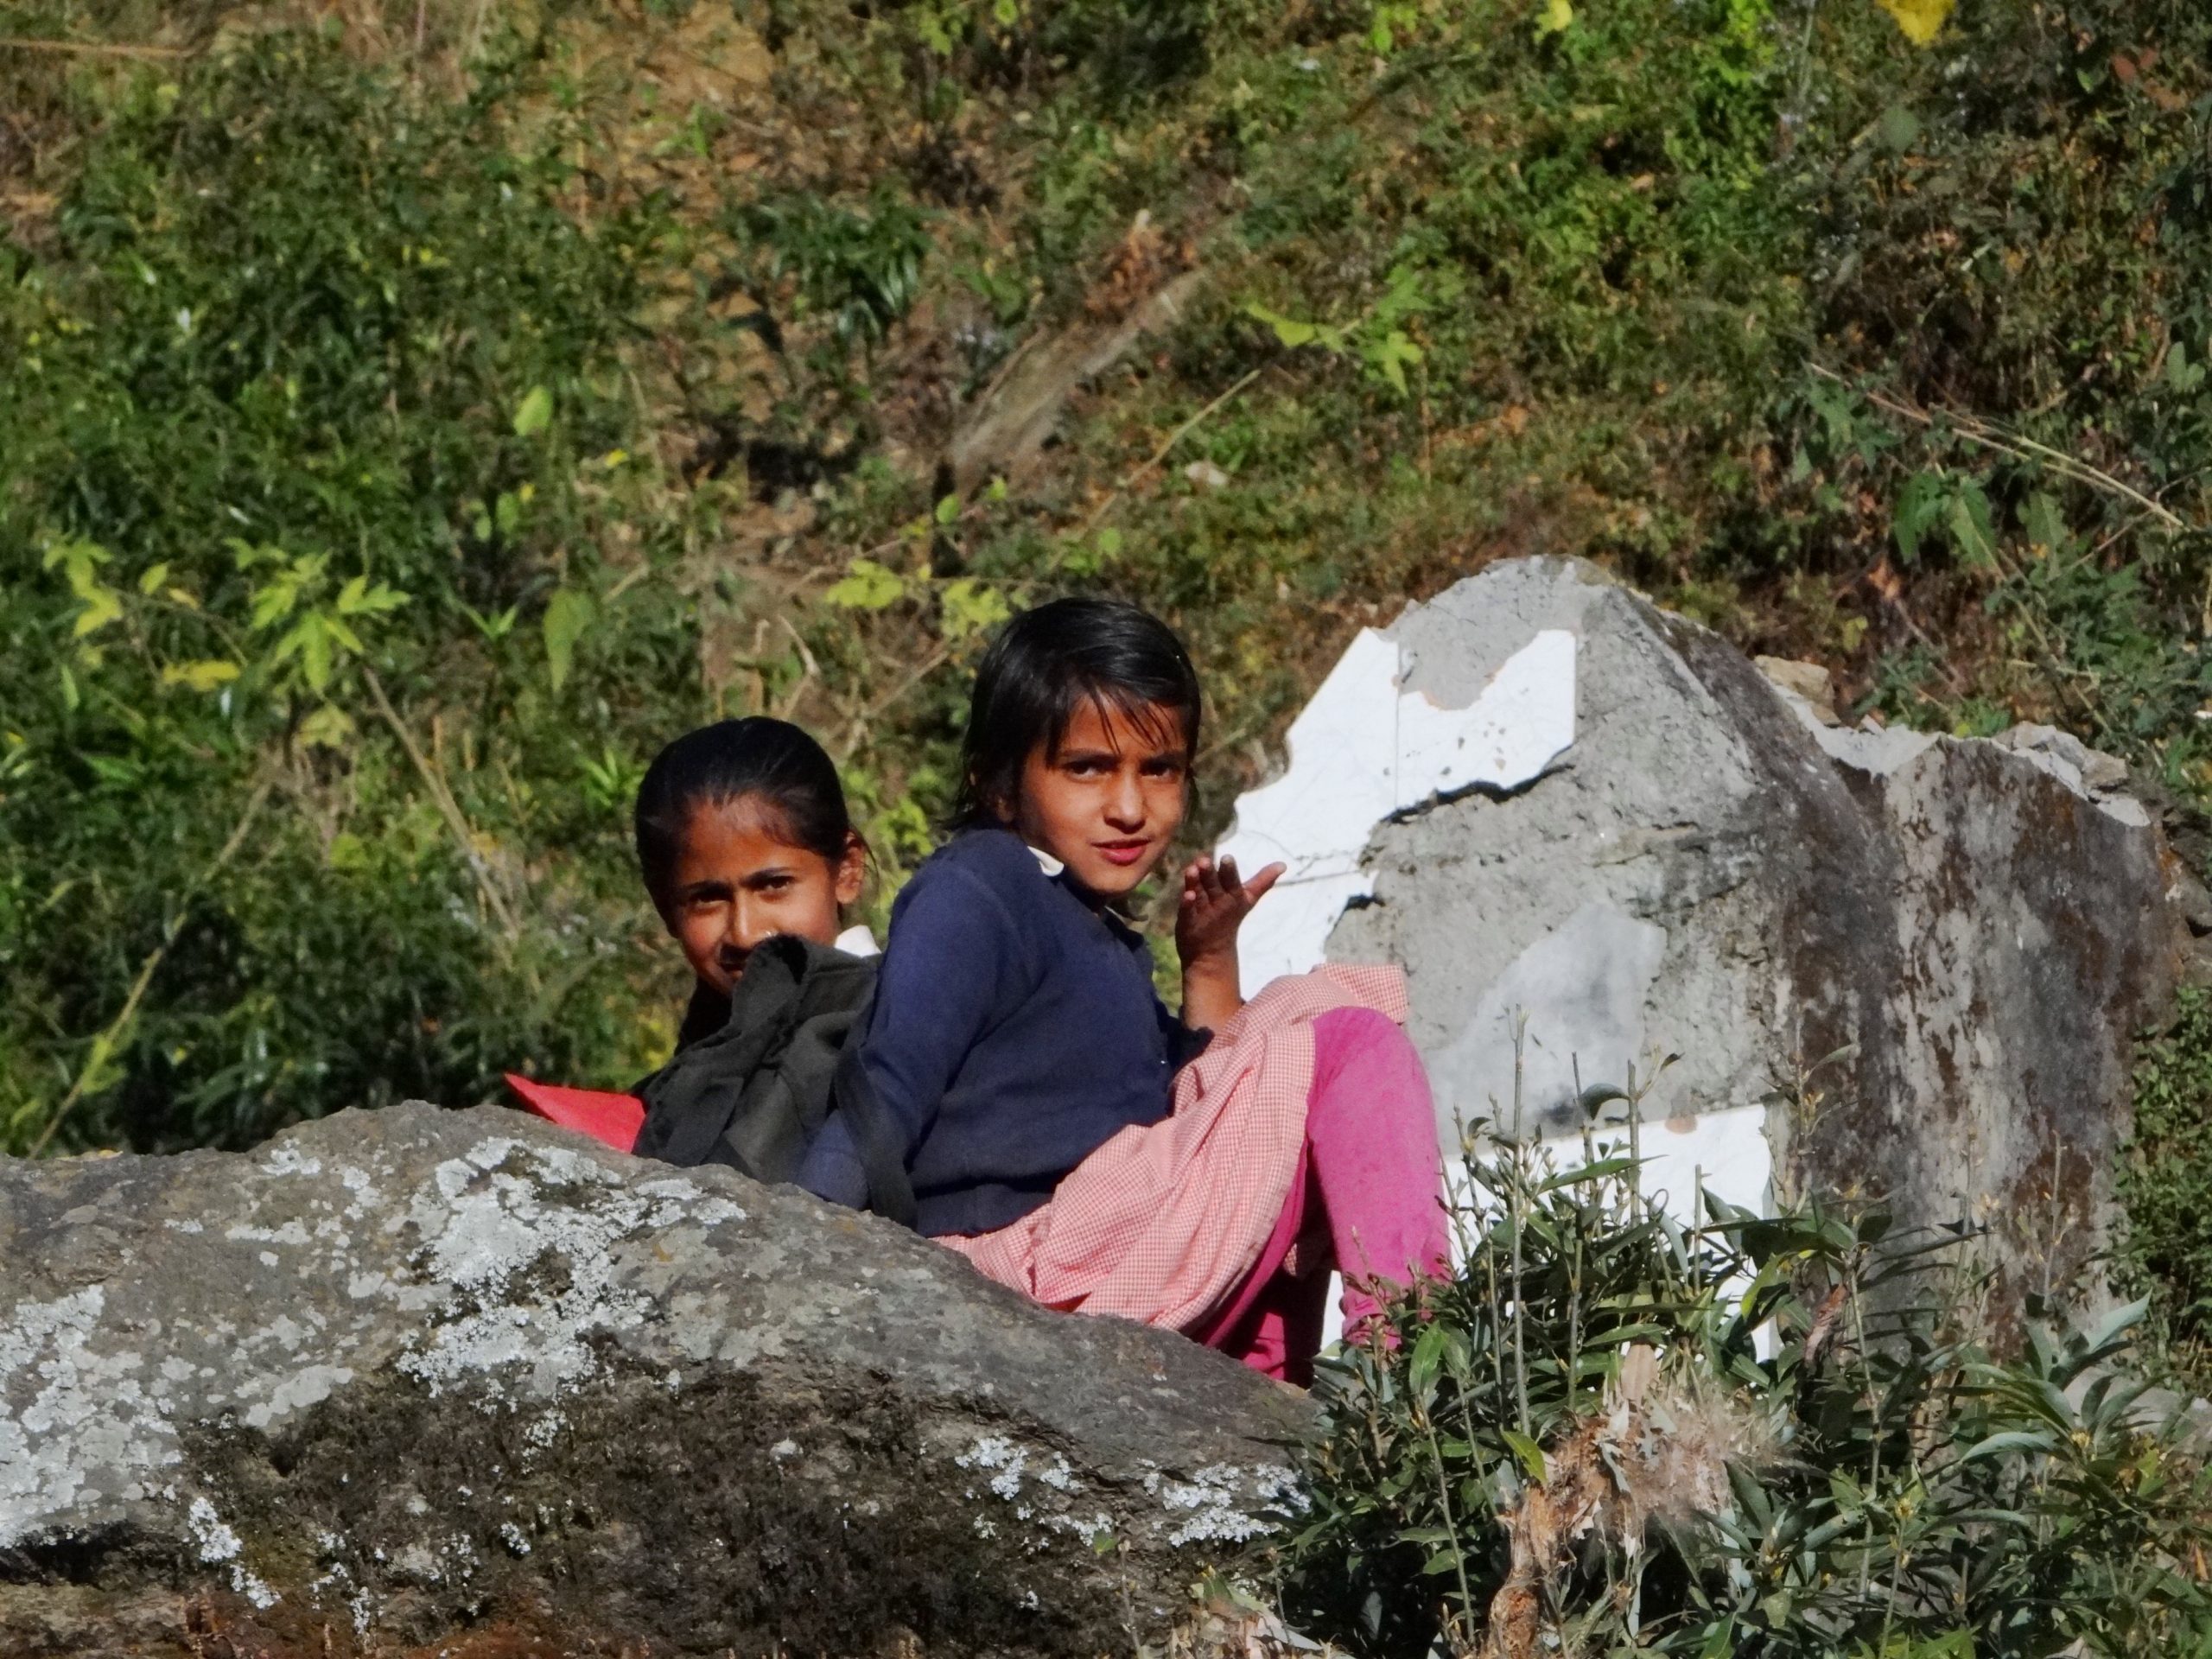 Kids of a village